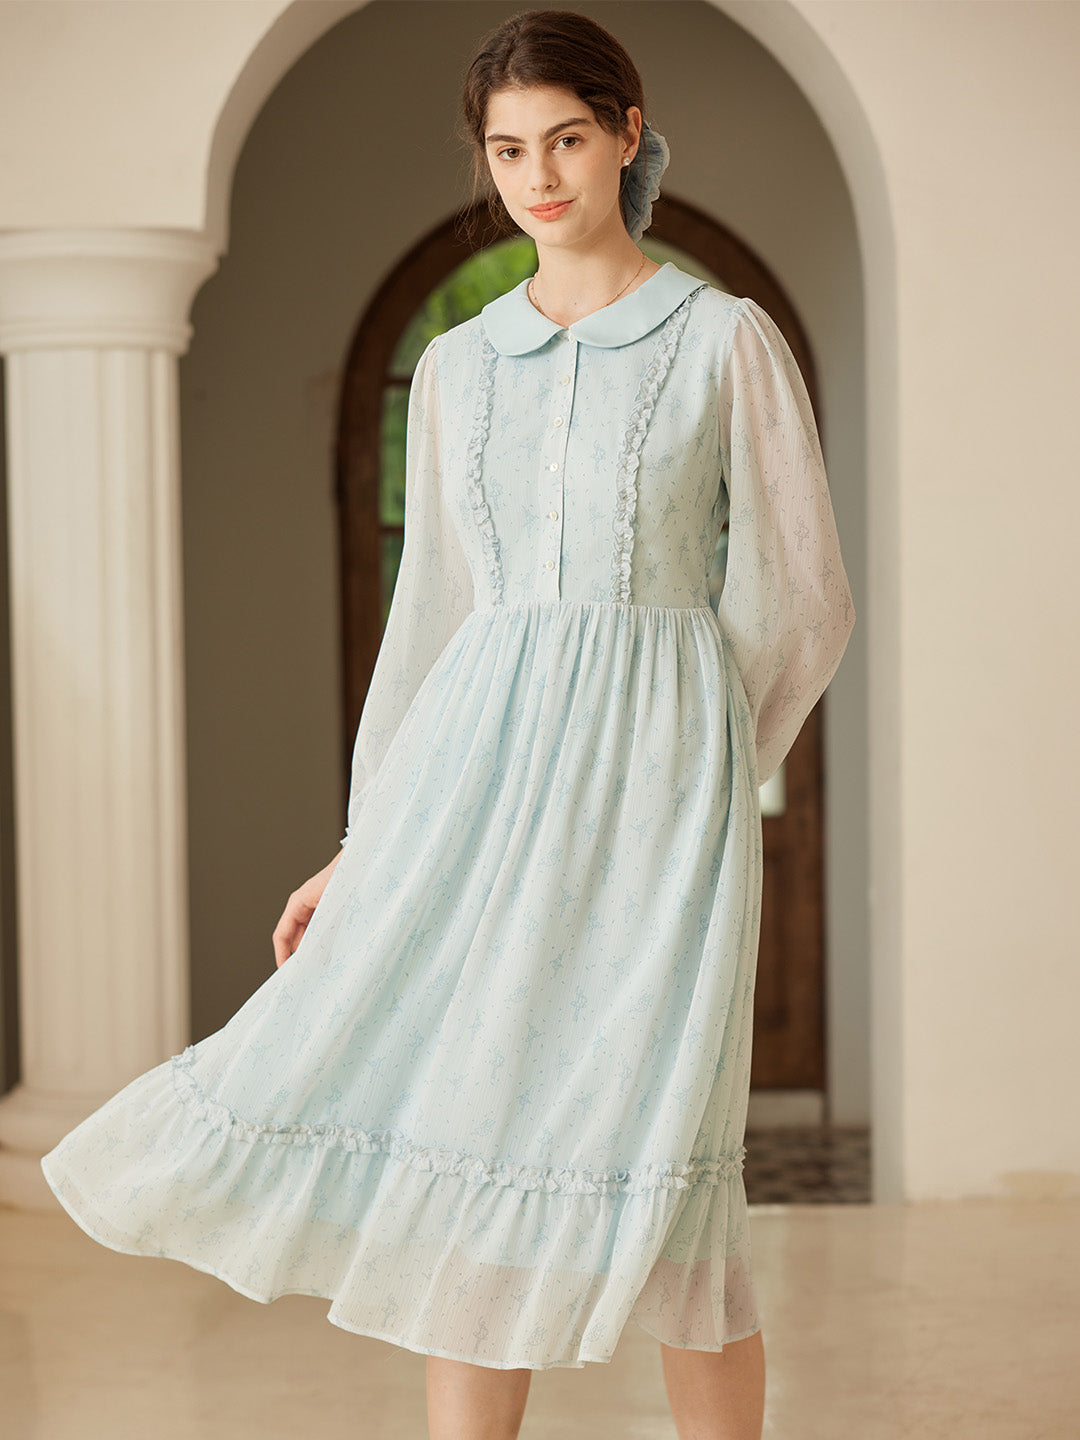 【Final Sale】Paola Original Ballerina Print Peter Pan Collar Dress